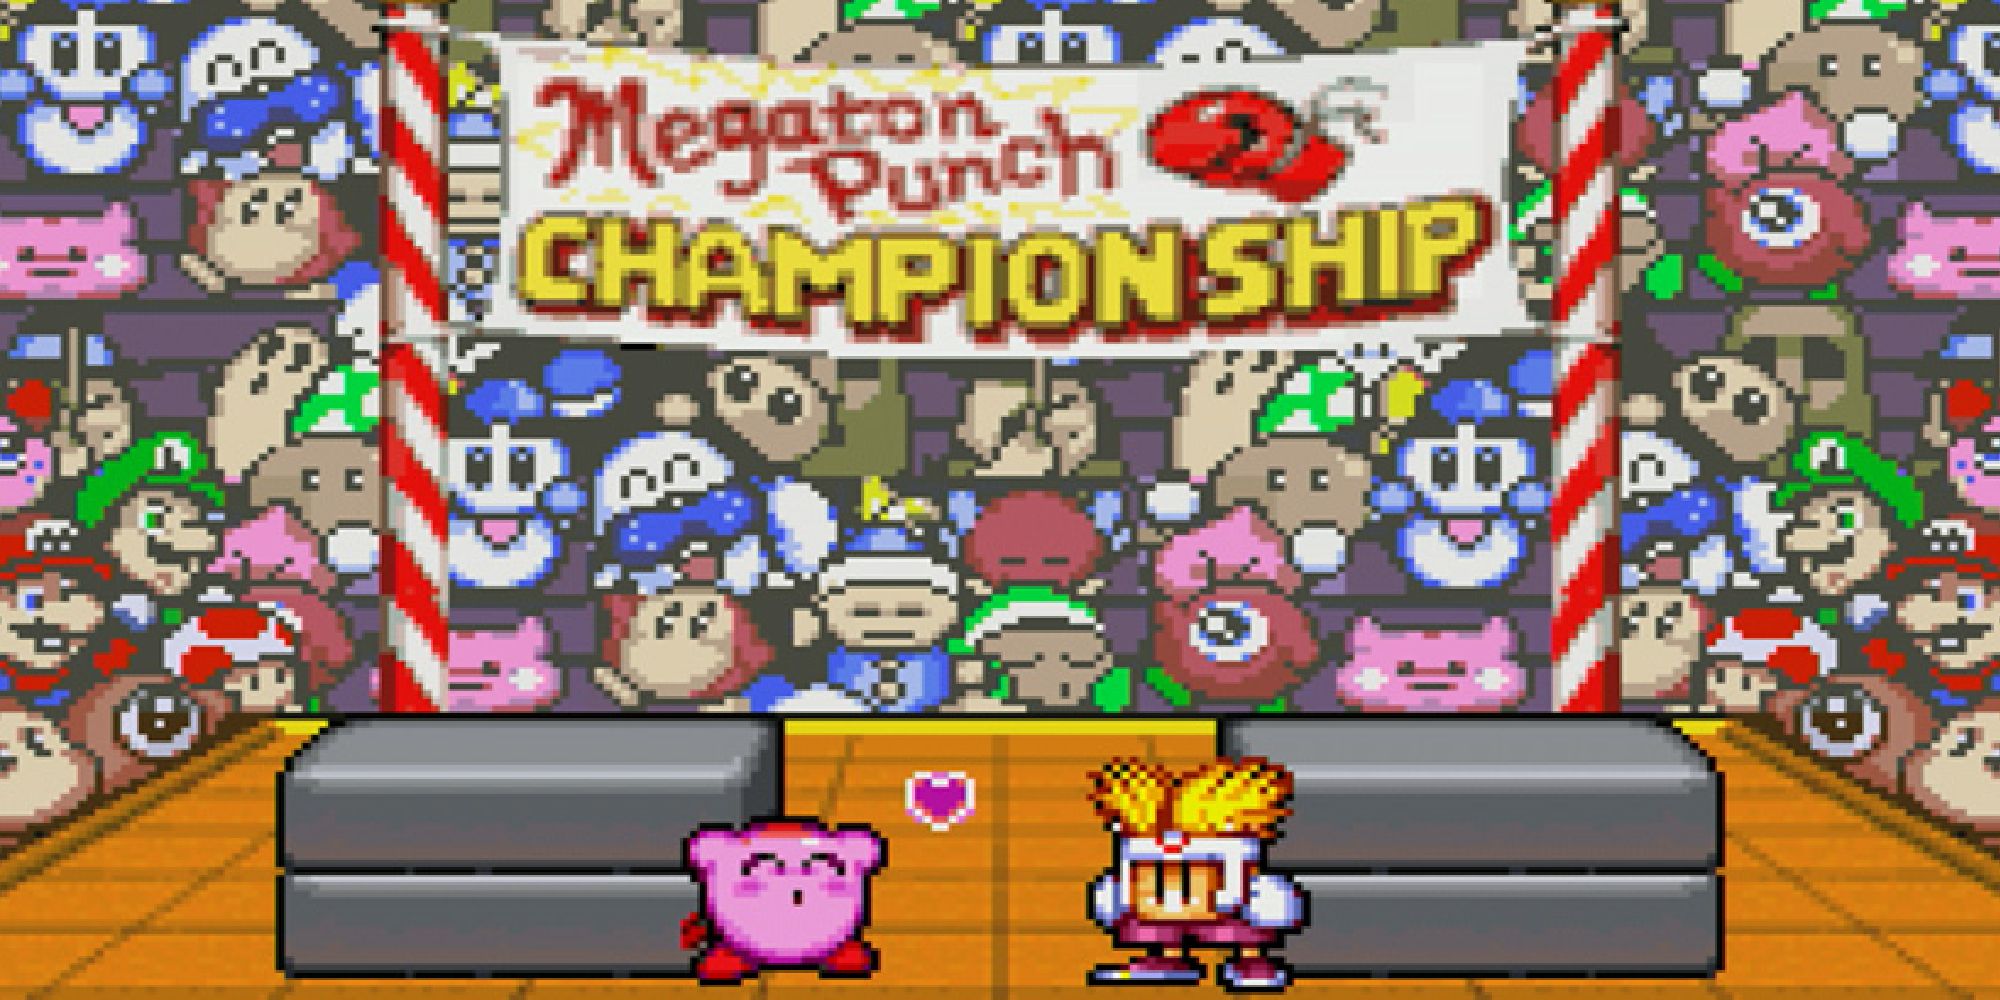 Марио и Луиджи сидят в кулуарах чемпионата Megaton Punch Championship.